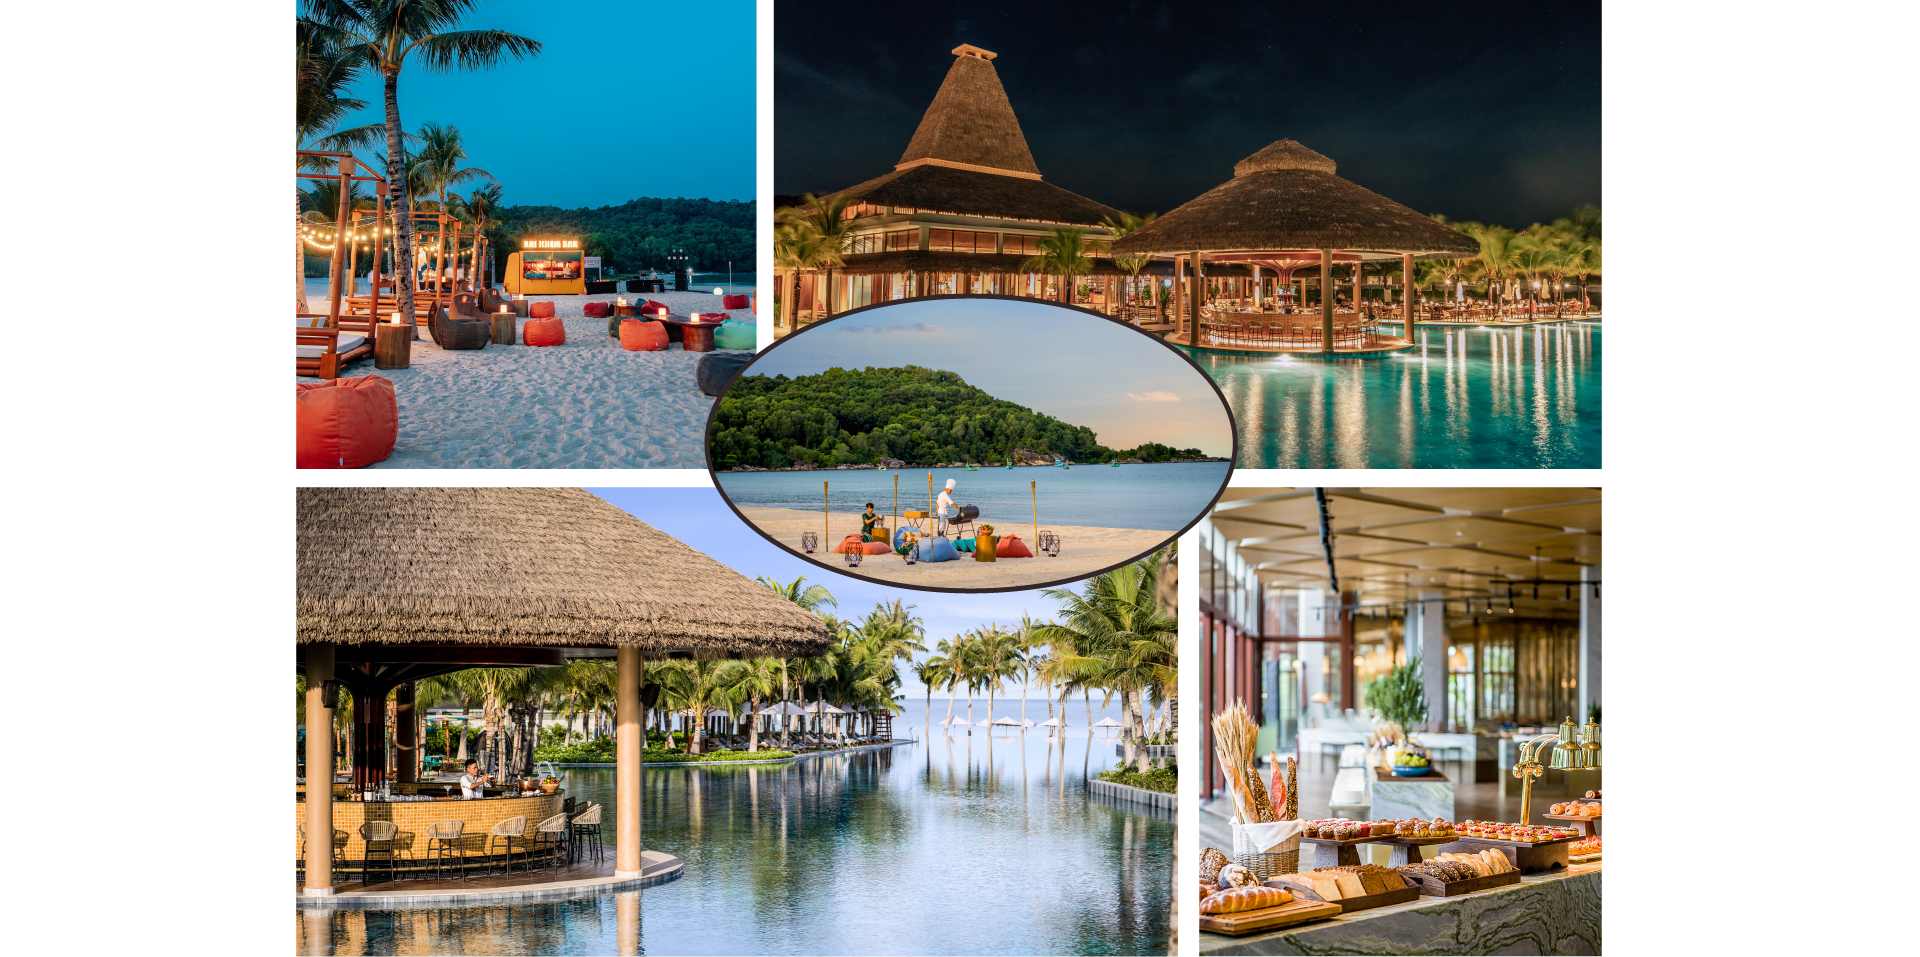 Trải nghiệm từ “local” đến “global” gì cũng trọn vẹn: Vùng Nam đảo Phú Quốc xứng danh là điểm đến mới của thế giới! - Ảnh 7.